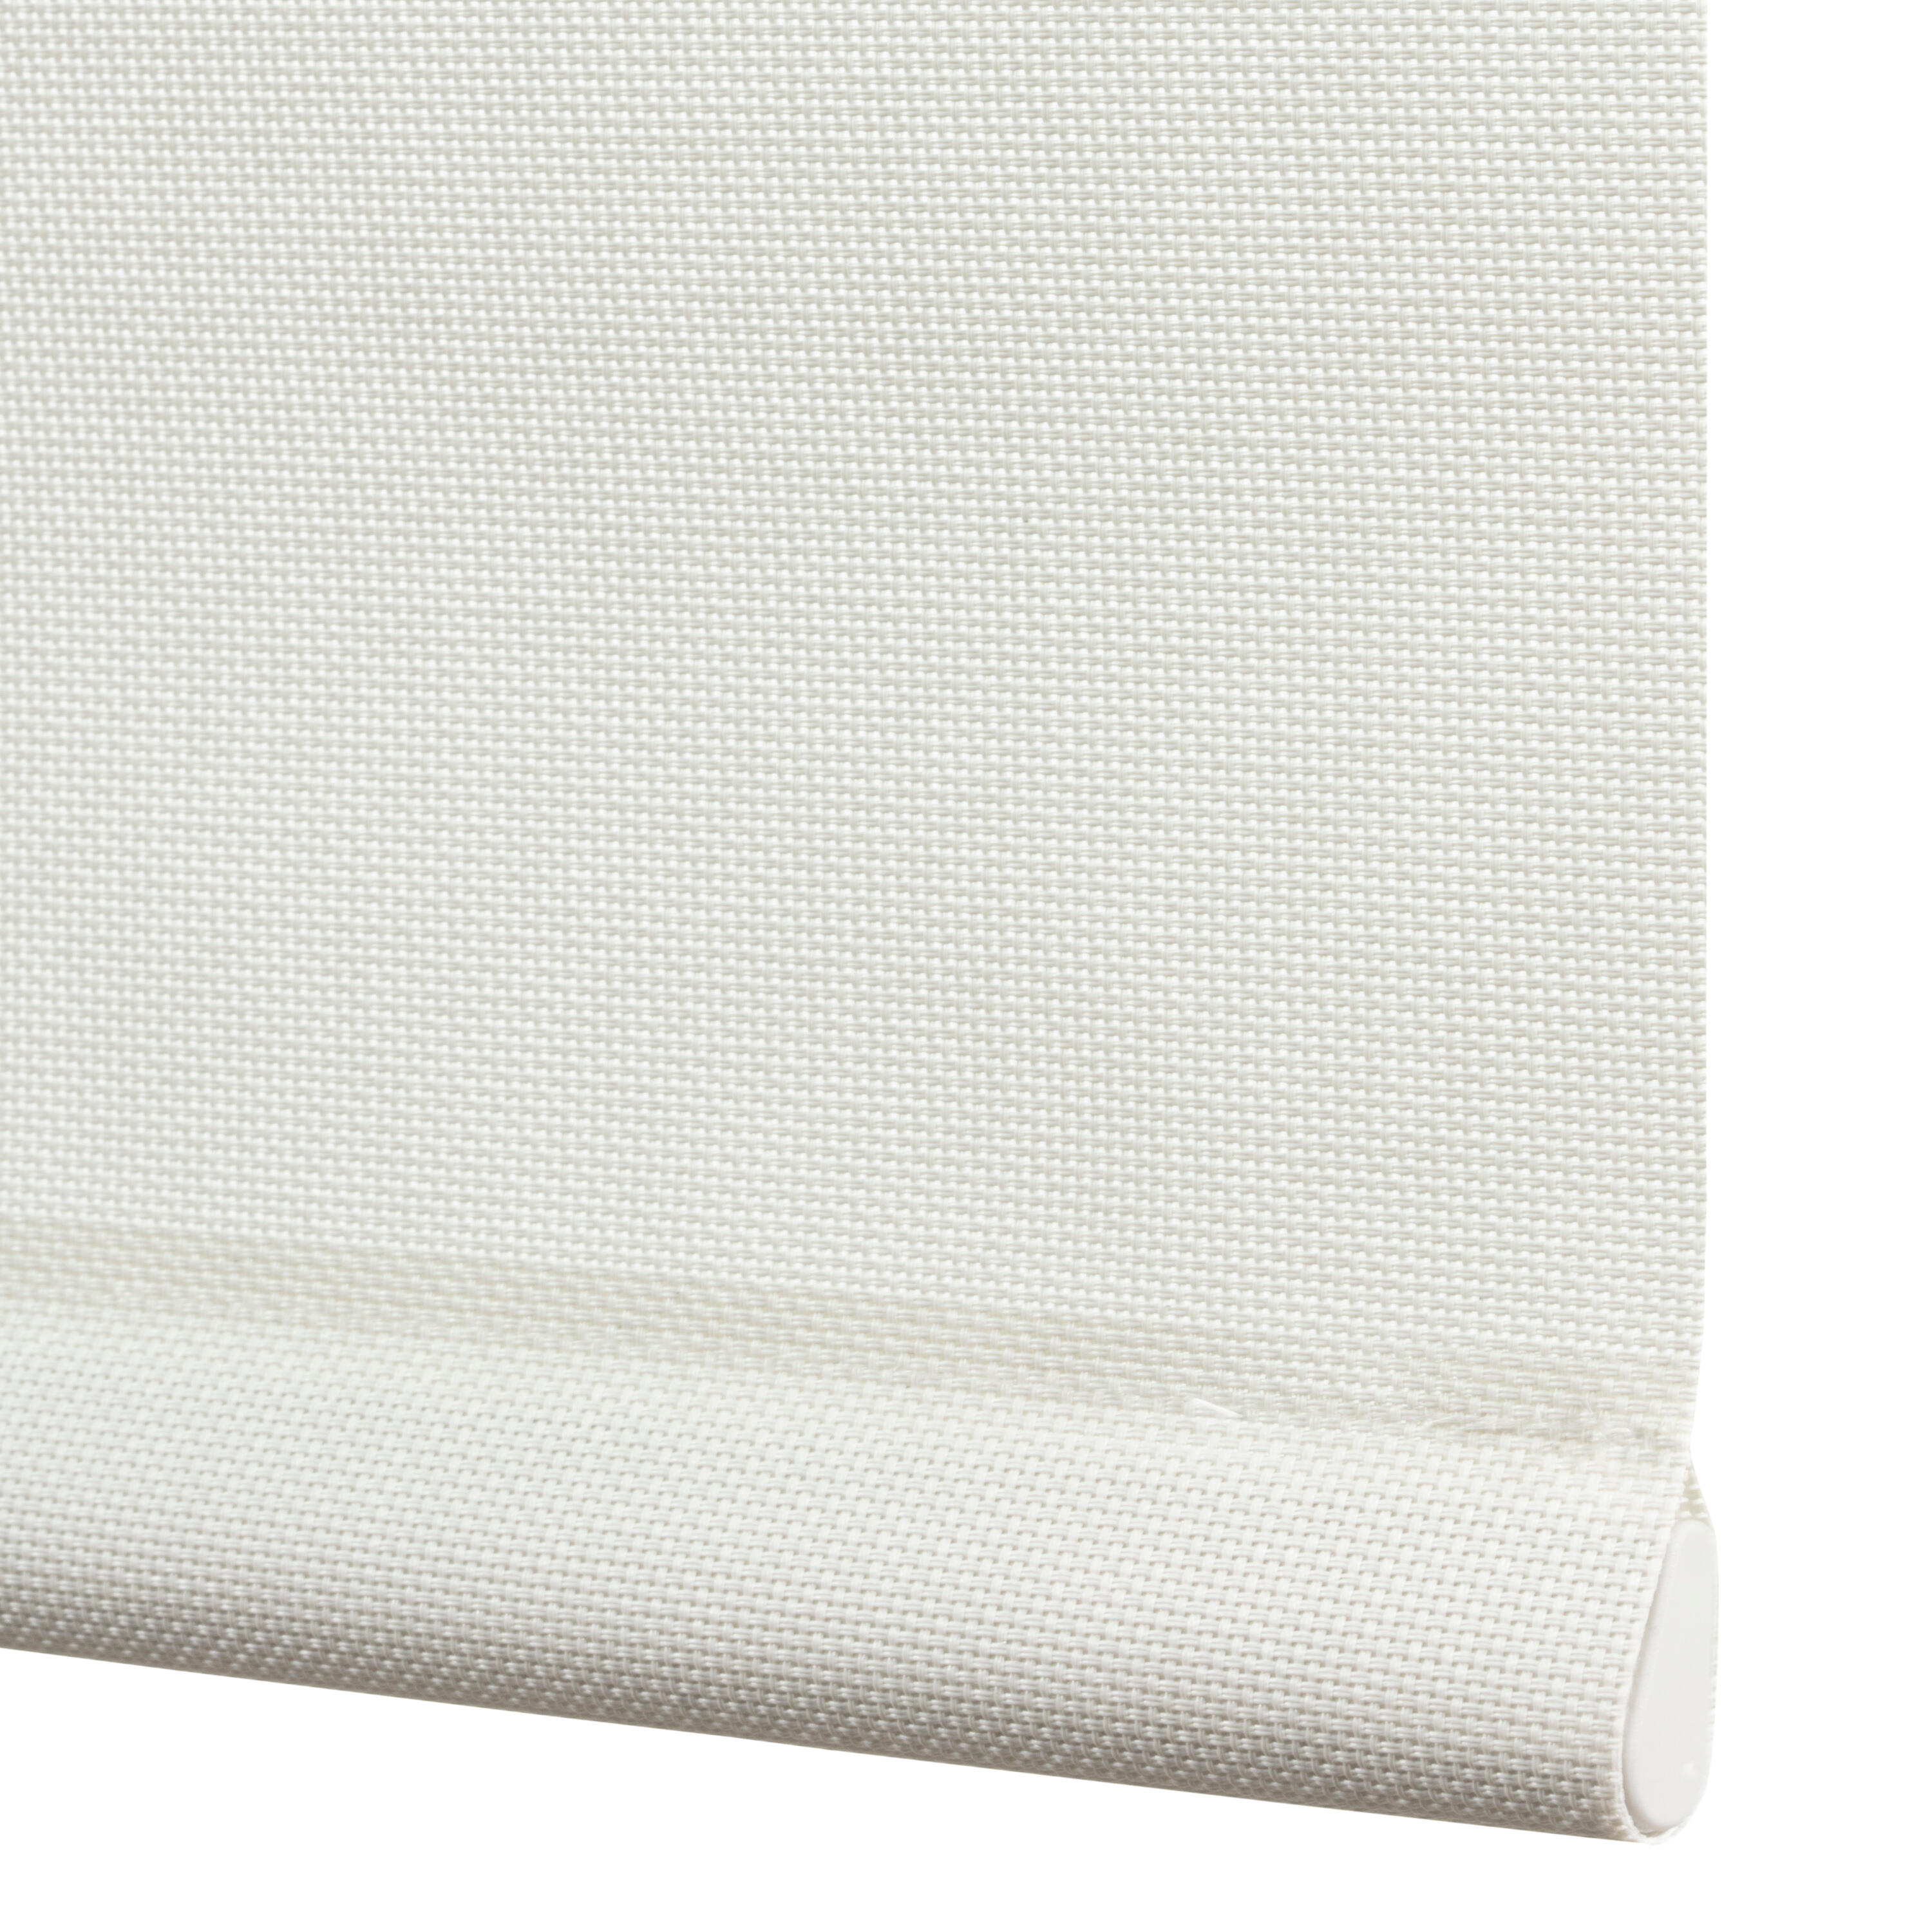 Tenda a rullo filtrante INSPIRE Brasilia bianco 165 x 250 cm - 5